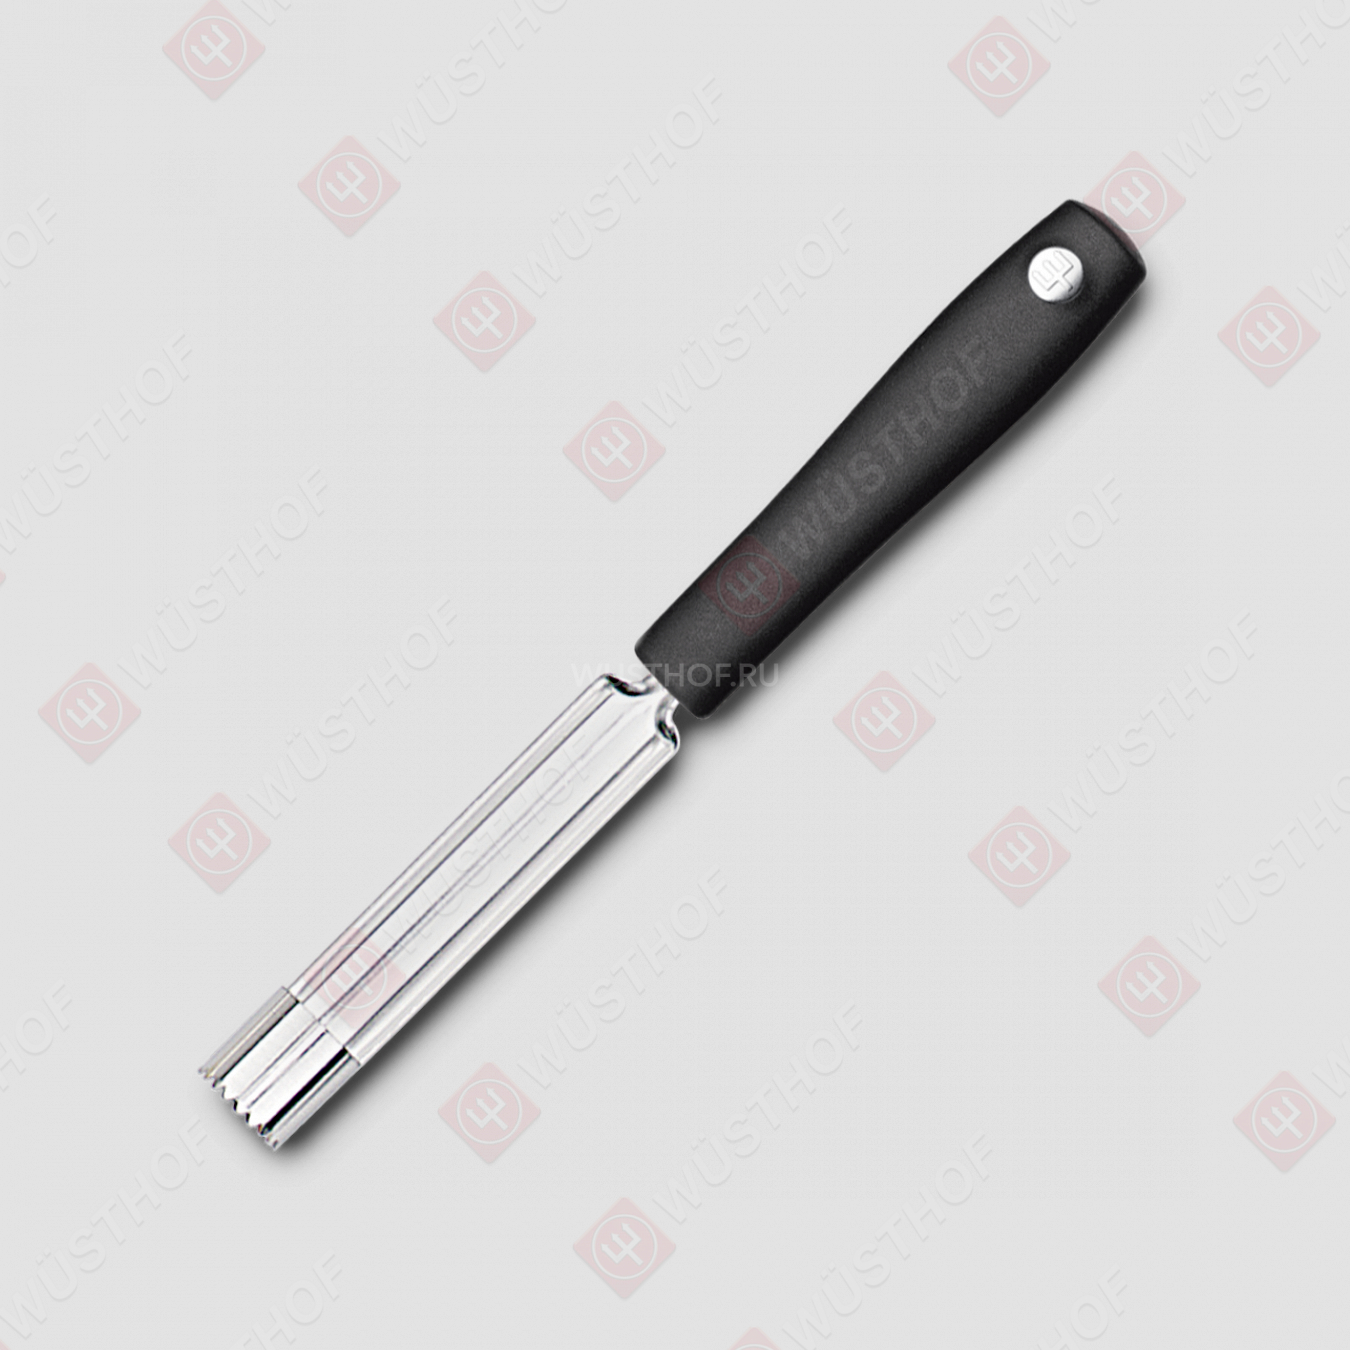 Нож для вырезания сердцевины из яблок d 2 см, серия Professional tools, WUESTHOF, Германия